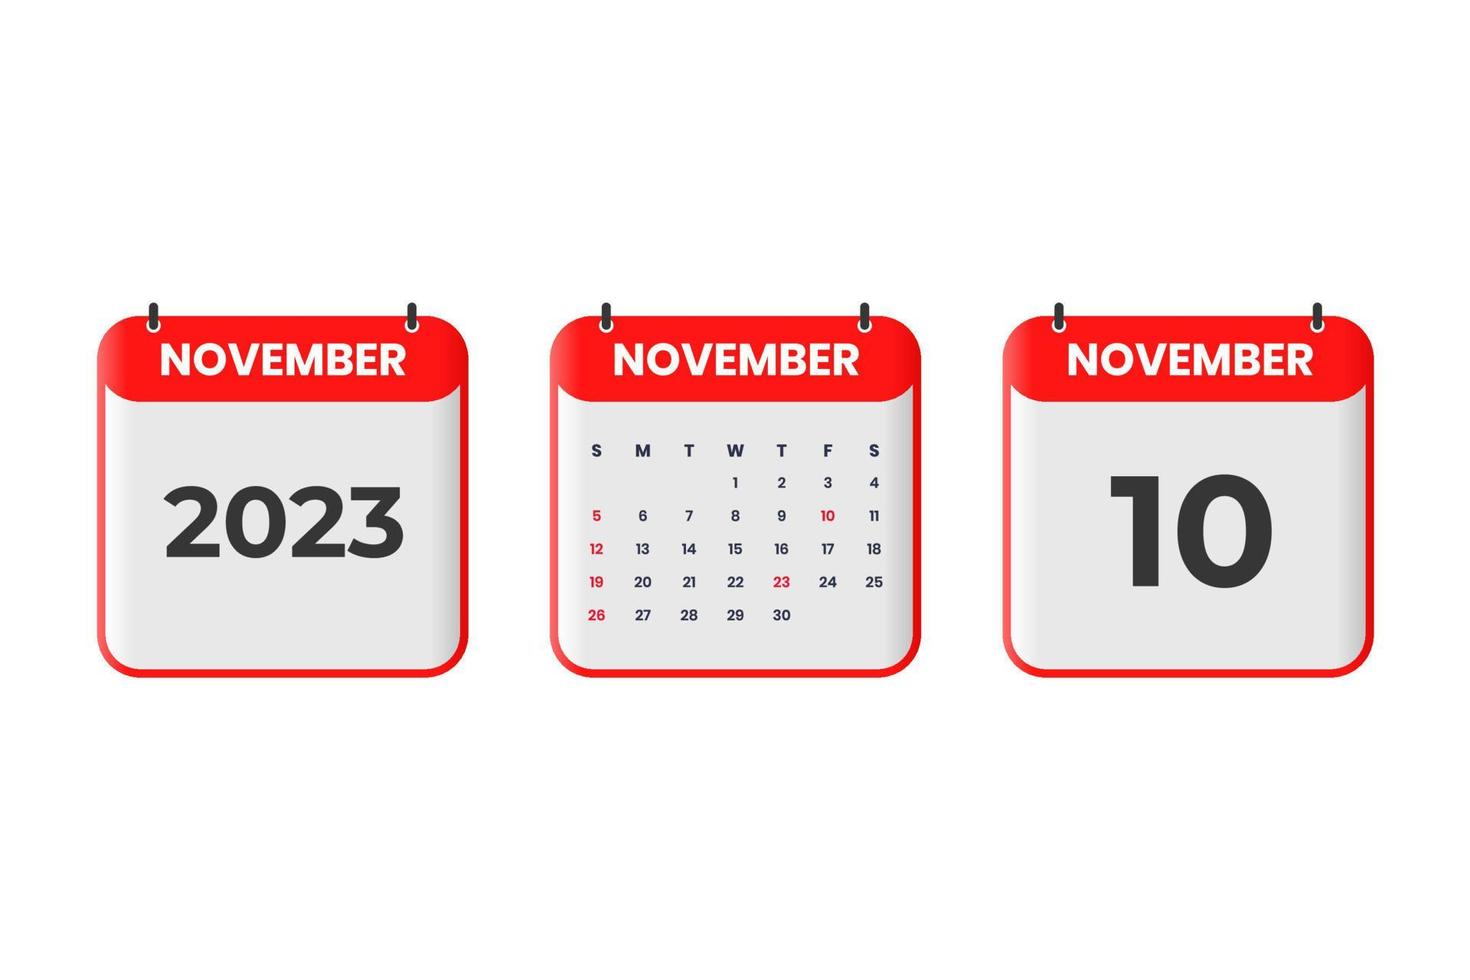 conception du calendrier de novembre 2023. 10 novembre 2023 icône de calendrier pour l'horaire, le rendez-vous, le concept de date importante vecteur